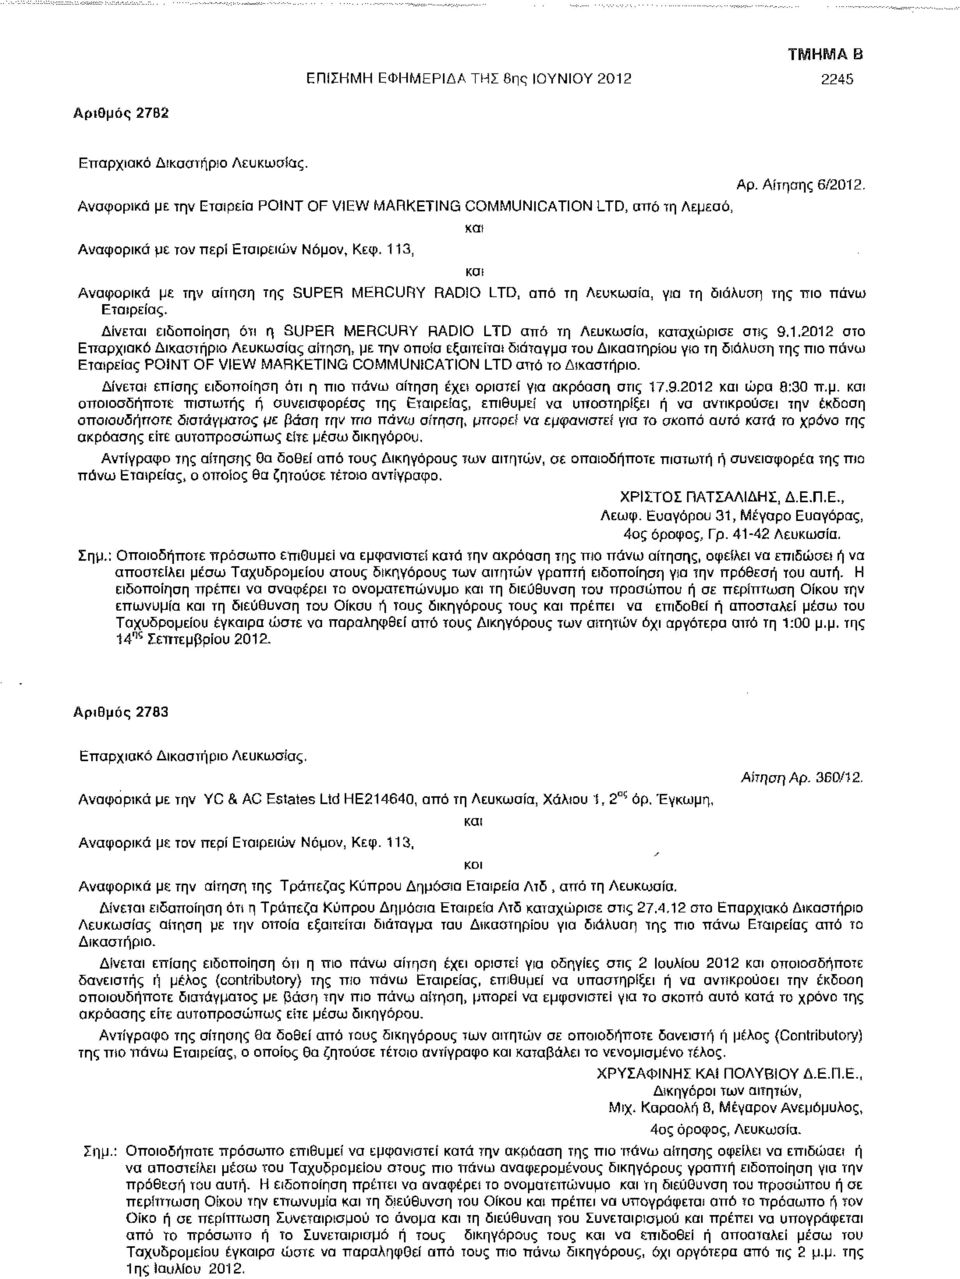 113, Αναφορικά με την αίτηση της SUPER MERCURY RADIO LTD, από τη Λευκωσία, για τη διάλυση της πιο πάνω Εταιρείας. Δίνεται ειδοποίηση ότι η SUPER MERCURY RADIO LTD από τη Λευκωσία, καταχώρισε στις 9.1.2012 στο Επαρχιακό Δικαστήριο Λευκωσίας αίτηση, με την οποία εξαιτείτα* διάταγμα του Δικαστηρίου για τη διάλυση της πιο πάνω Εταιρείας POINT OF VIEW MARKETING COMMUNICATION LTD αττό το Δικαστήριο.